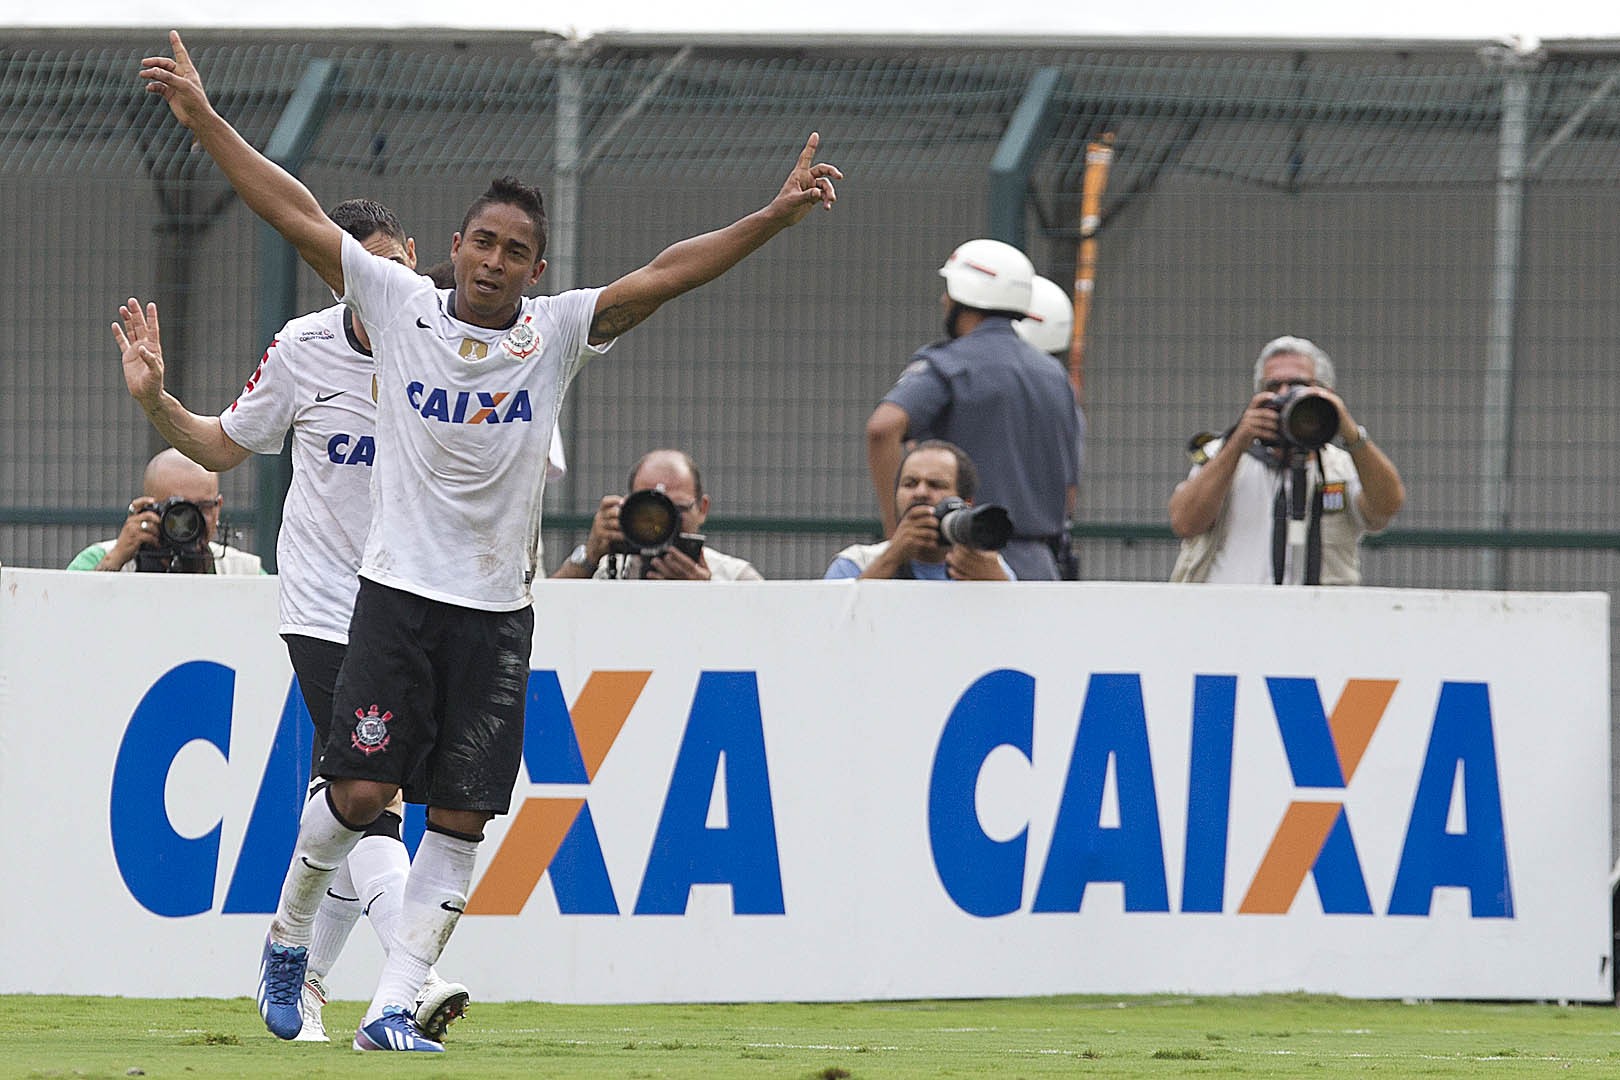 Jorge Henrique - Deixou o Corinthians em 2013, e vestiu a camisa do Internacional. Passou também por Vasco, Figueirense e, atualmente, defende o Náutico.